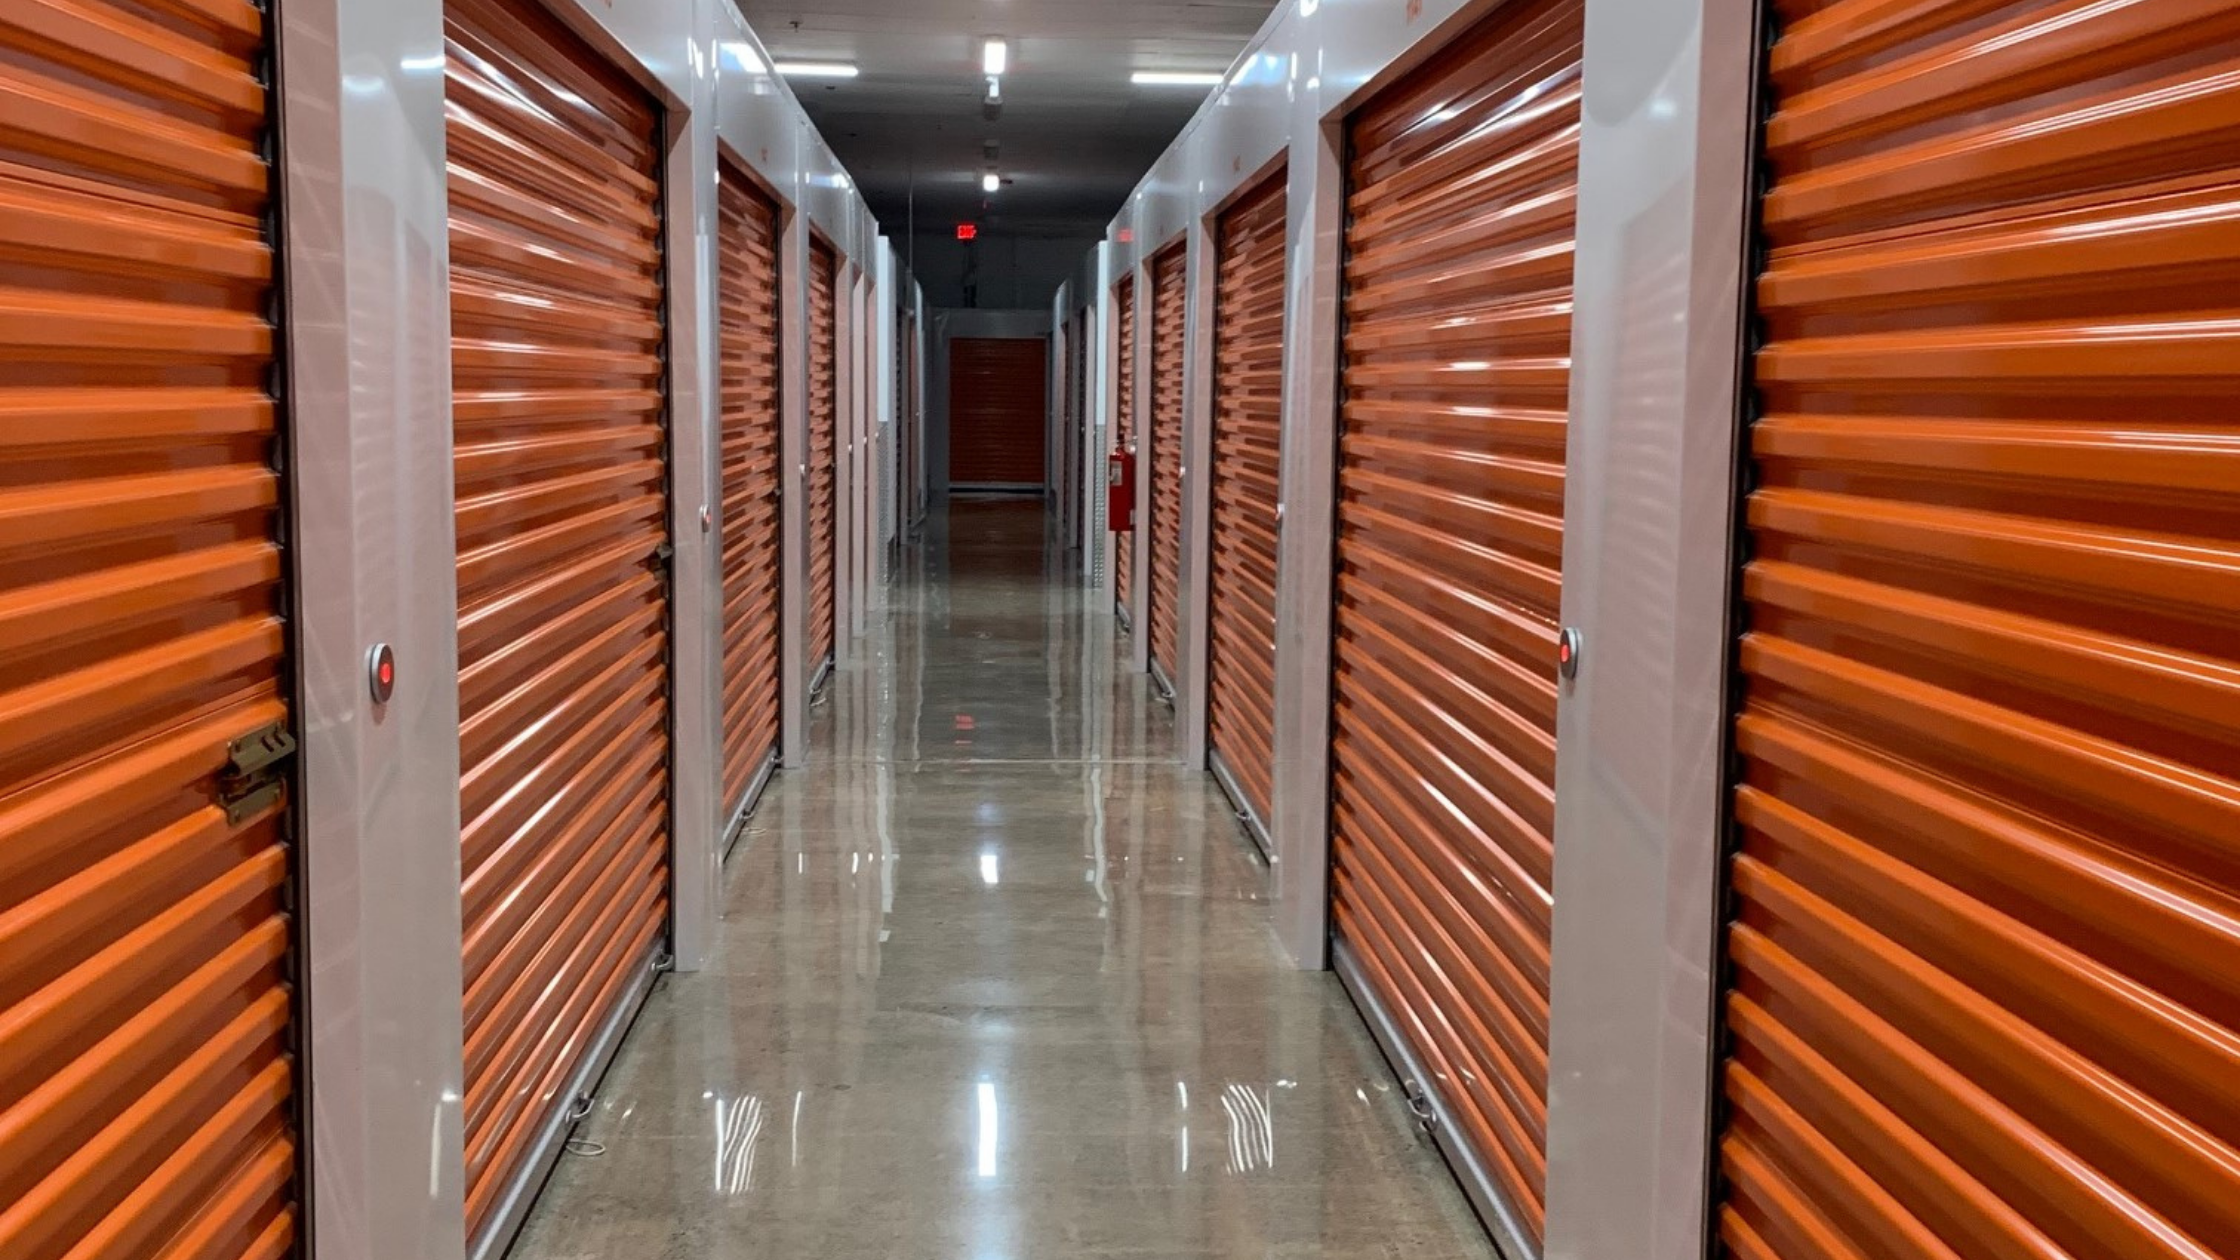 Orange Self-Storage Doors in Hallway